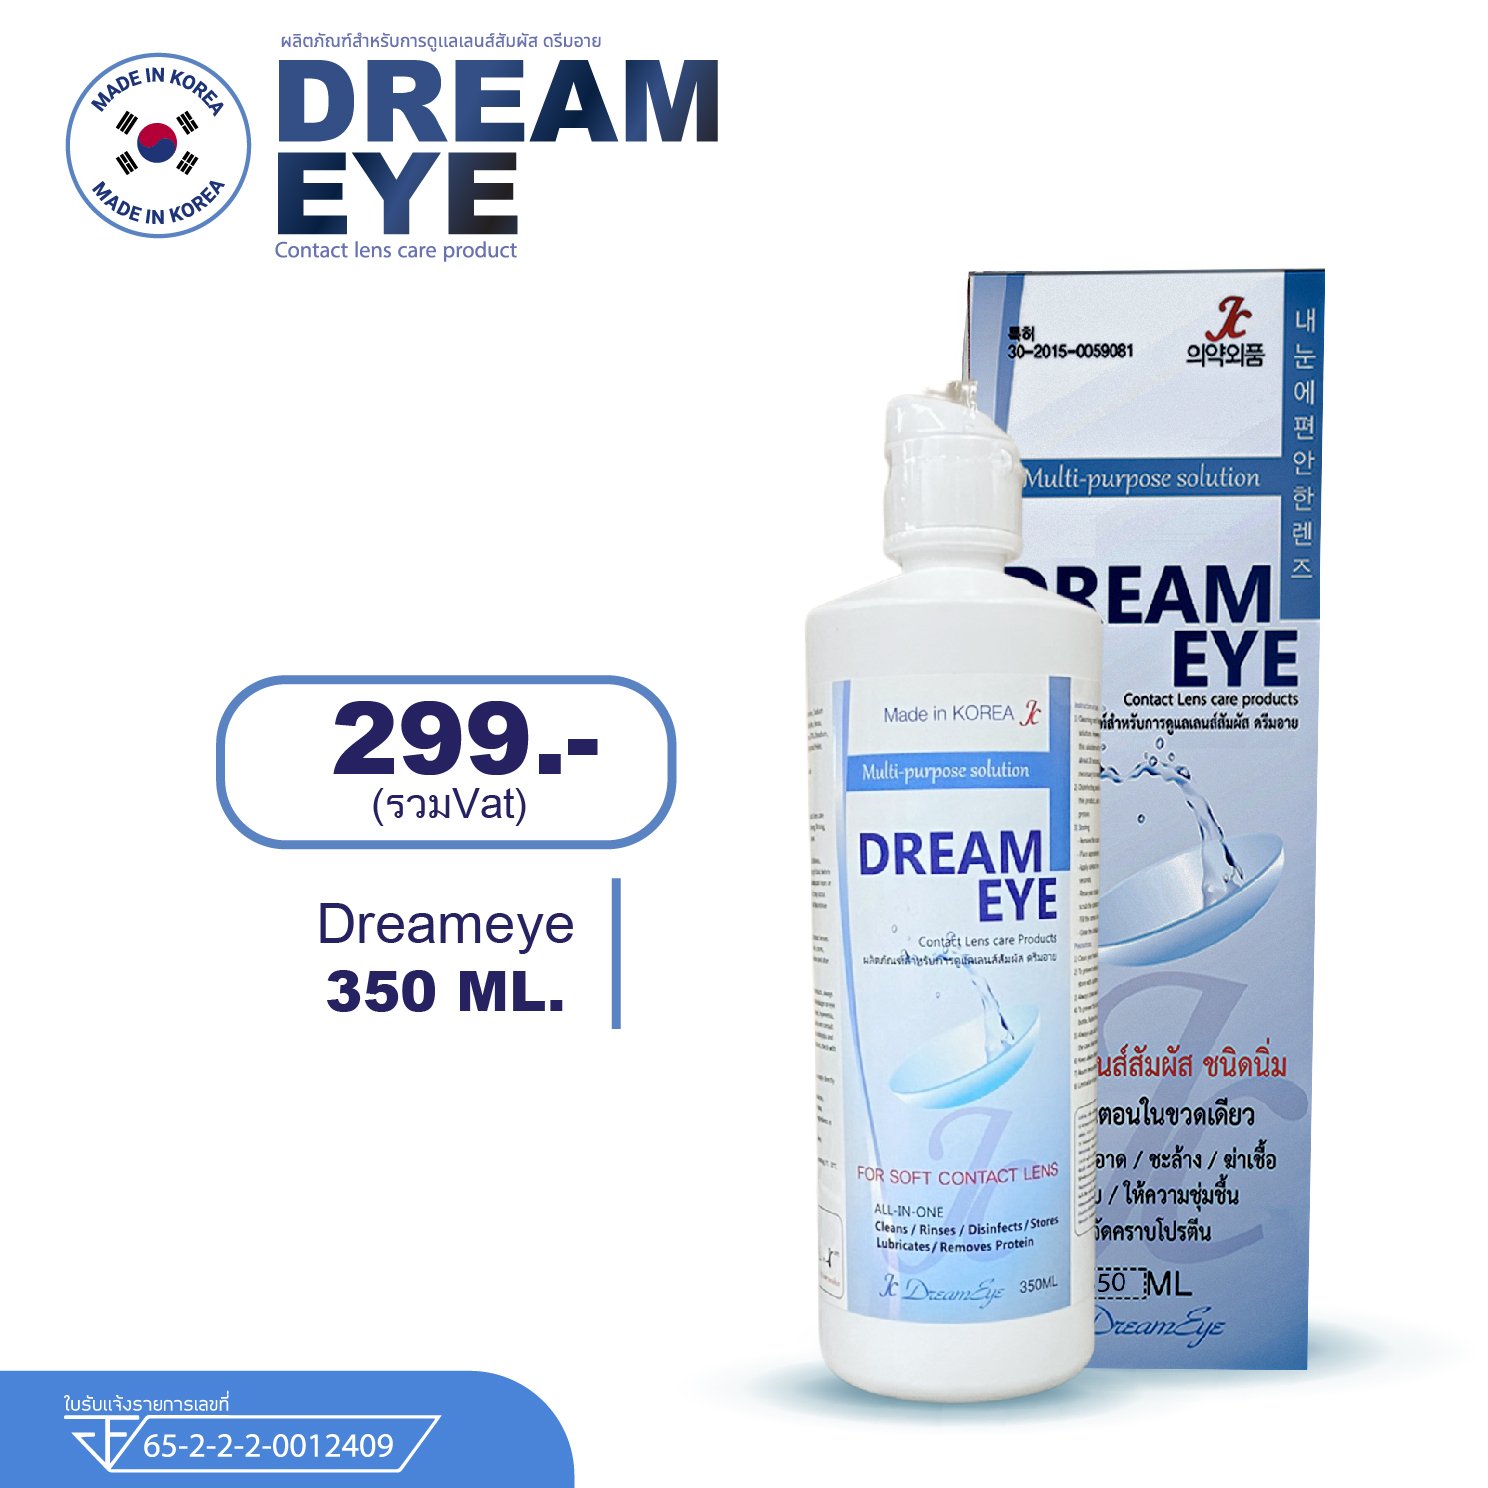 Dreameye 350 Ml.